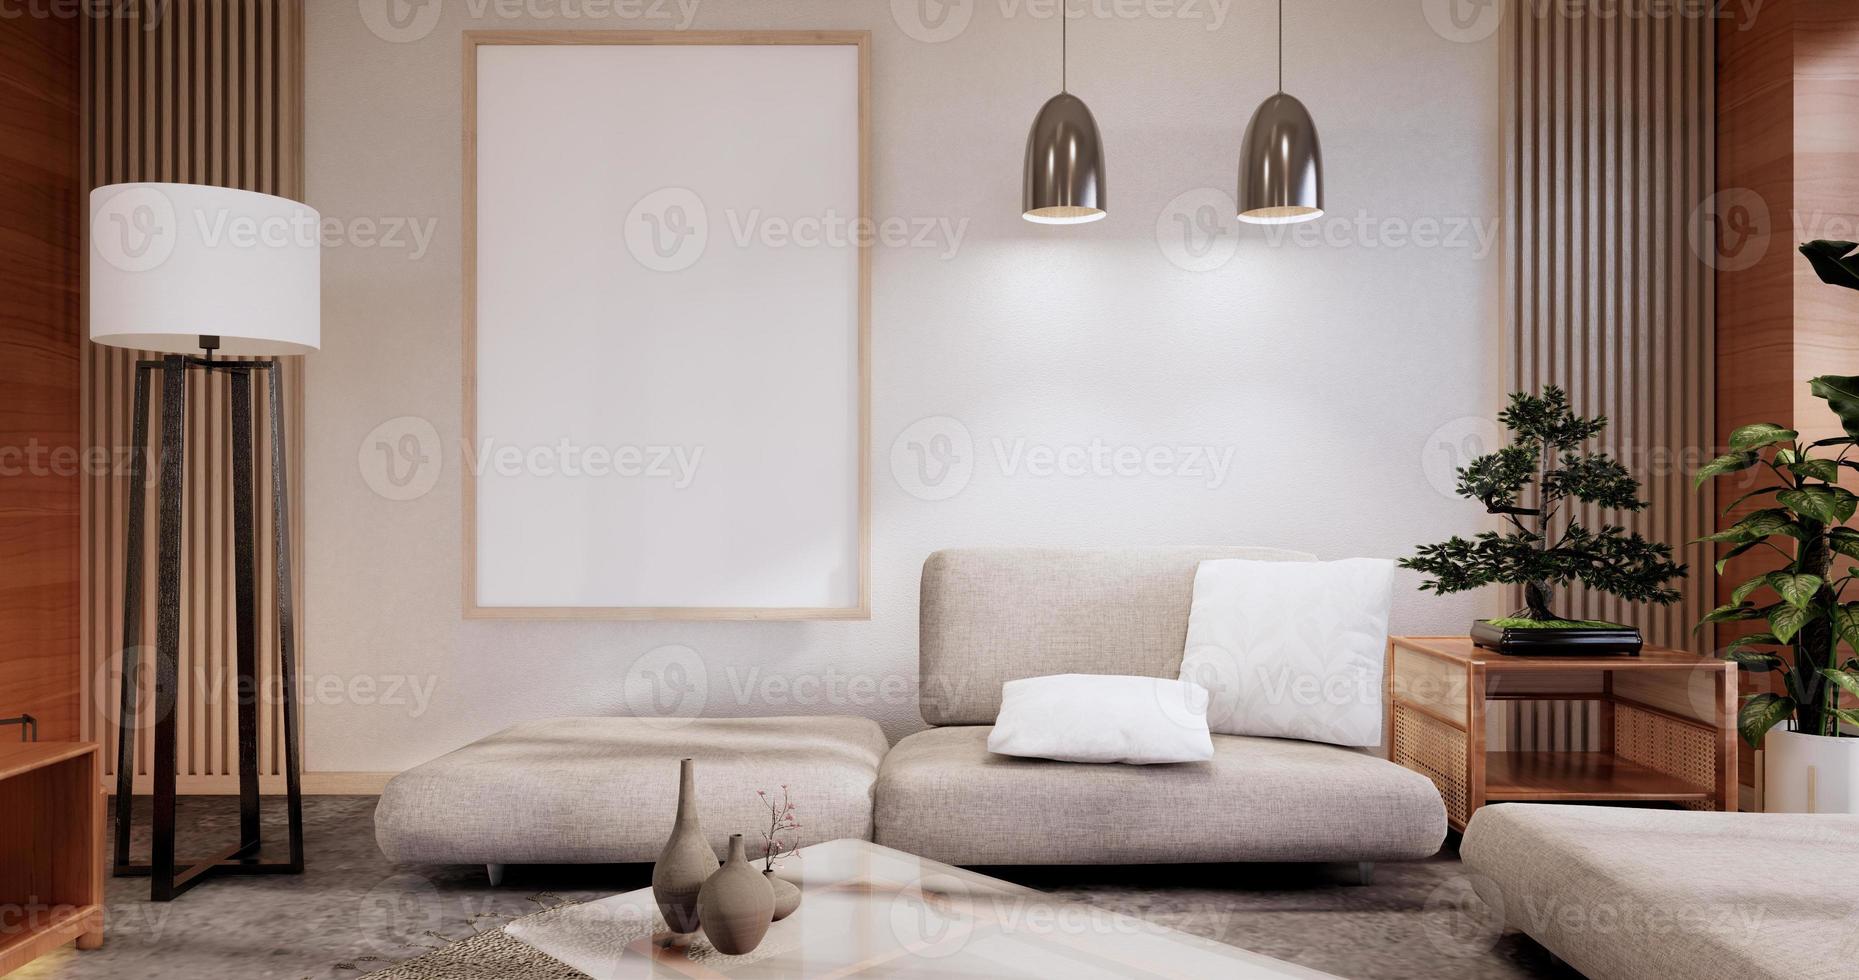 meubles de canapé et design de chambre moderne rendu minimal.3d photo